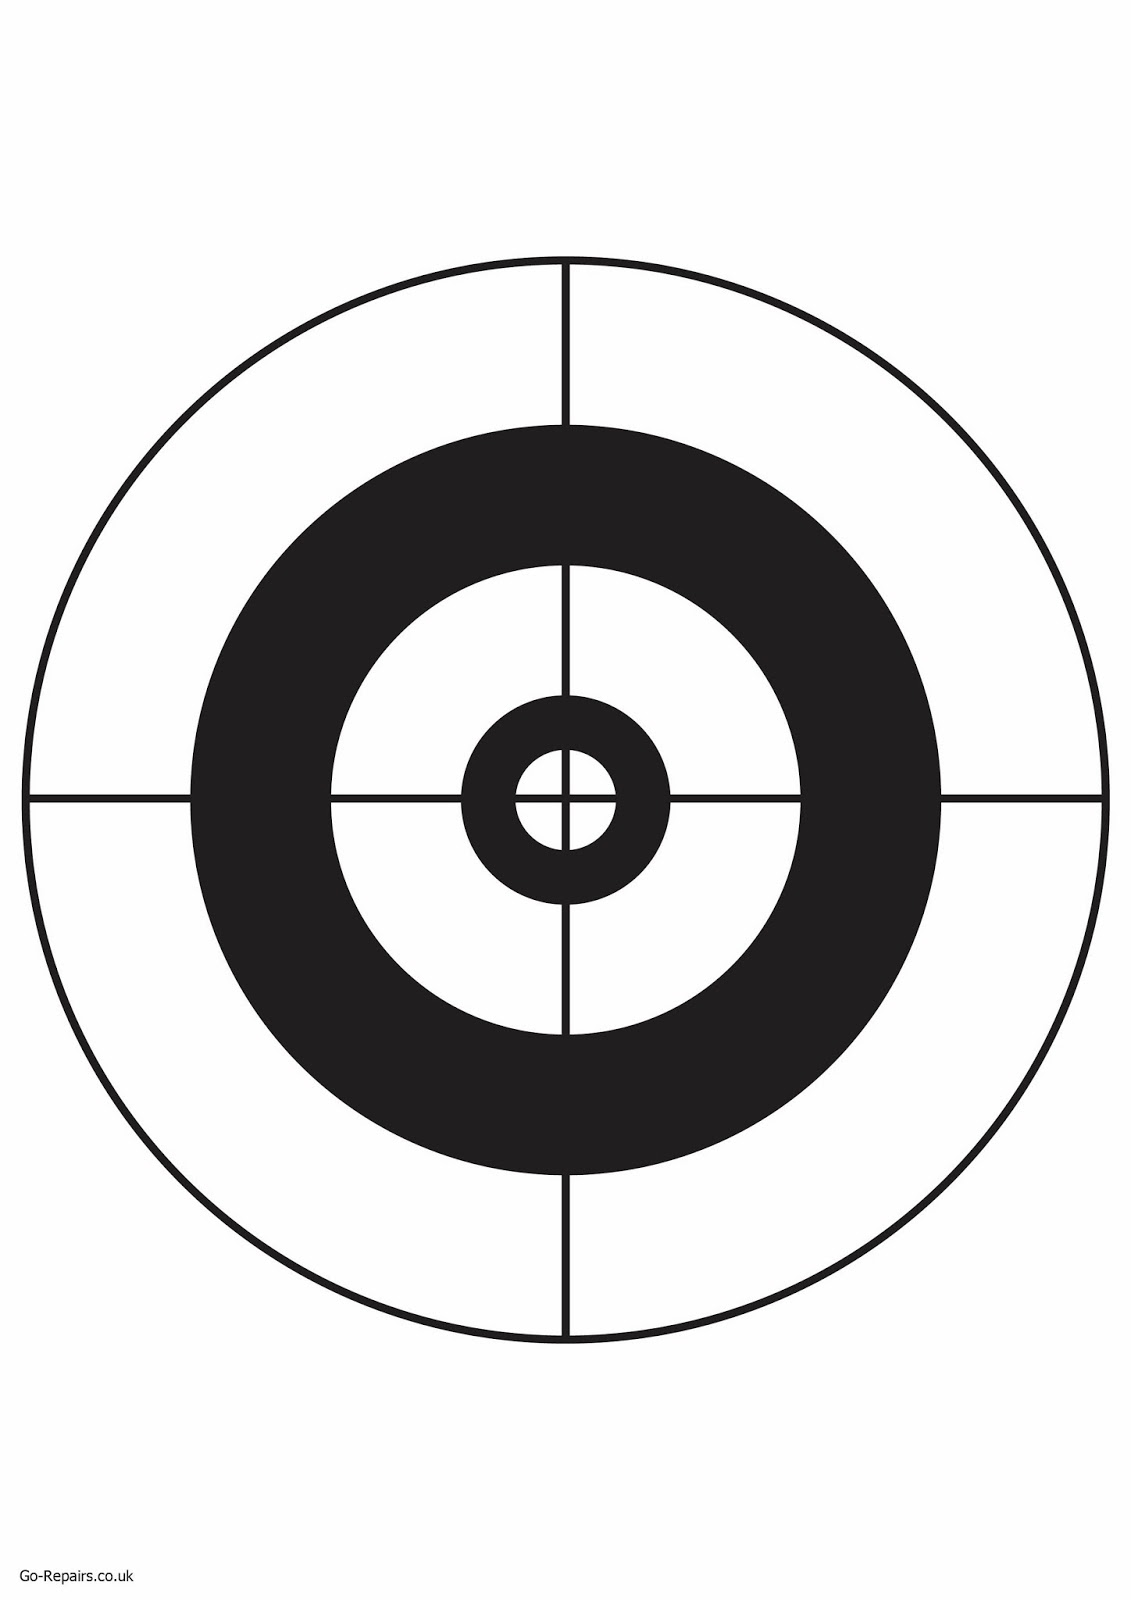 Go-Repairs Blog: Free Target Boards